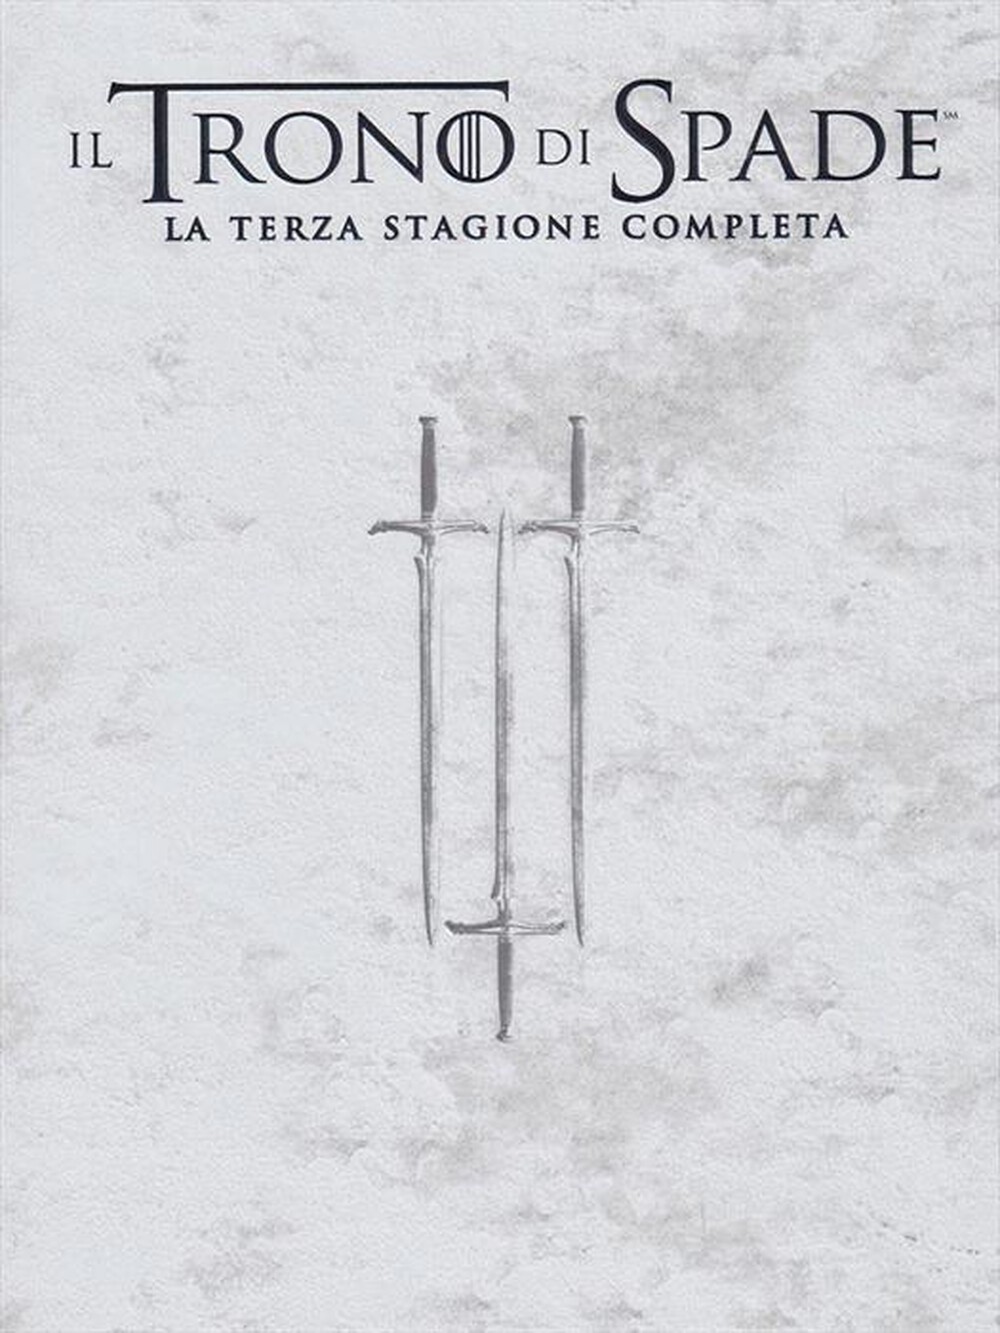 "WARNER HOME VIDEO - Trono Di Spade (Il) - Stagione 03 (5 Dvd) - "